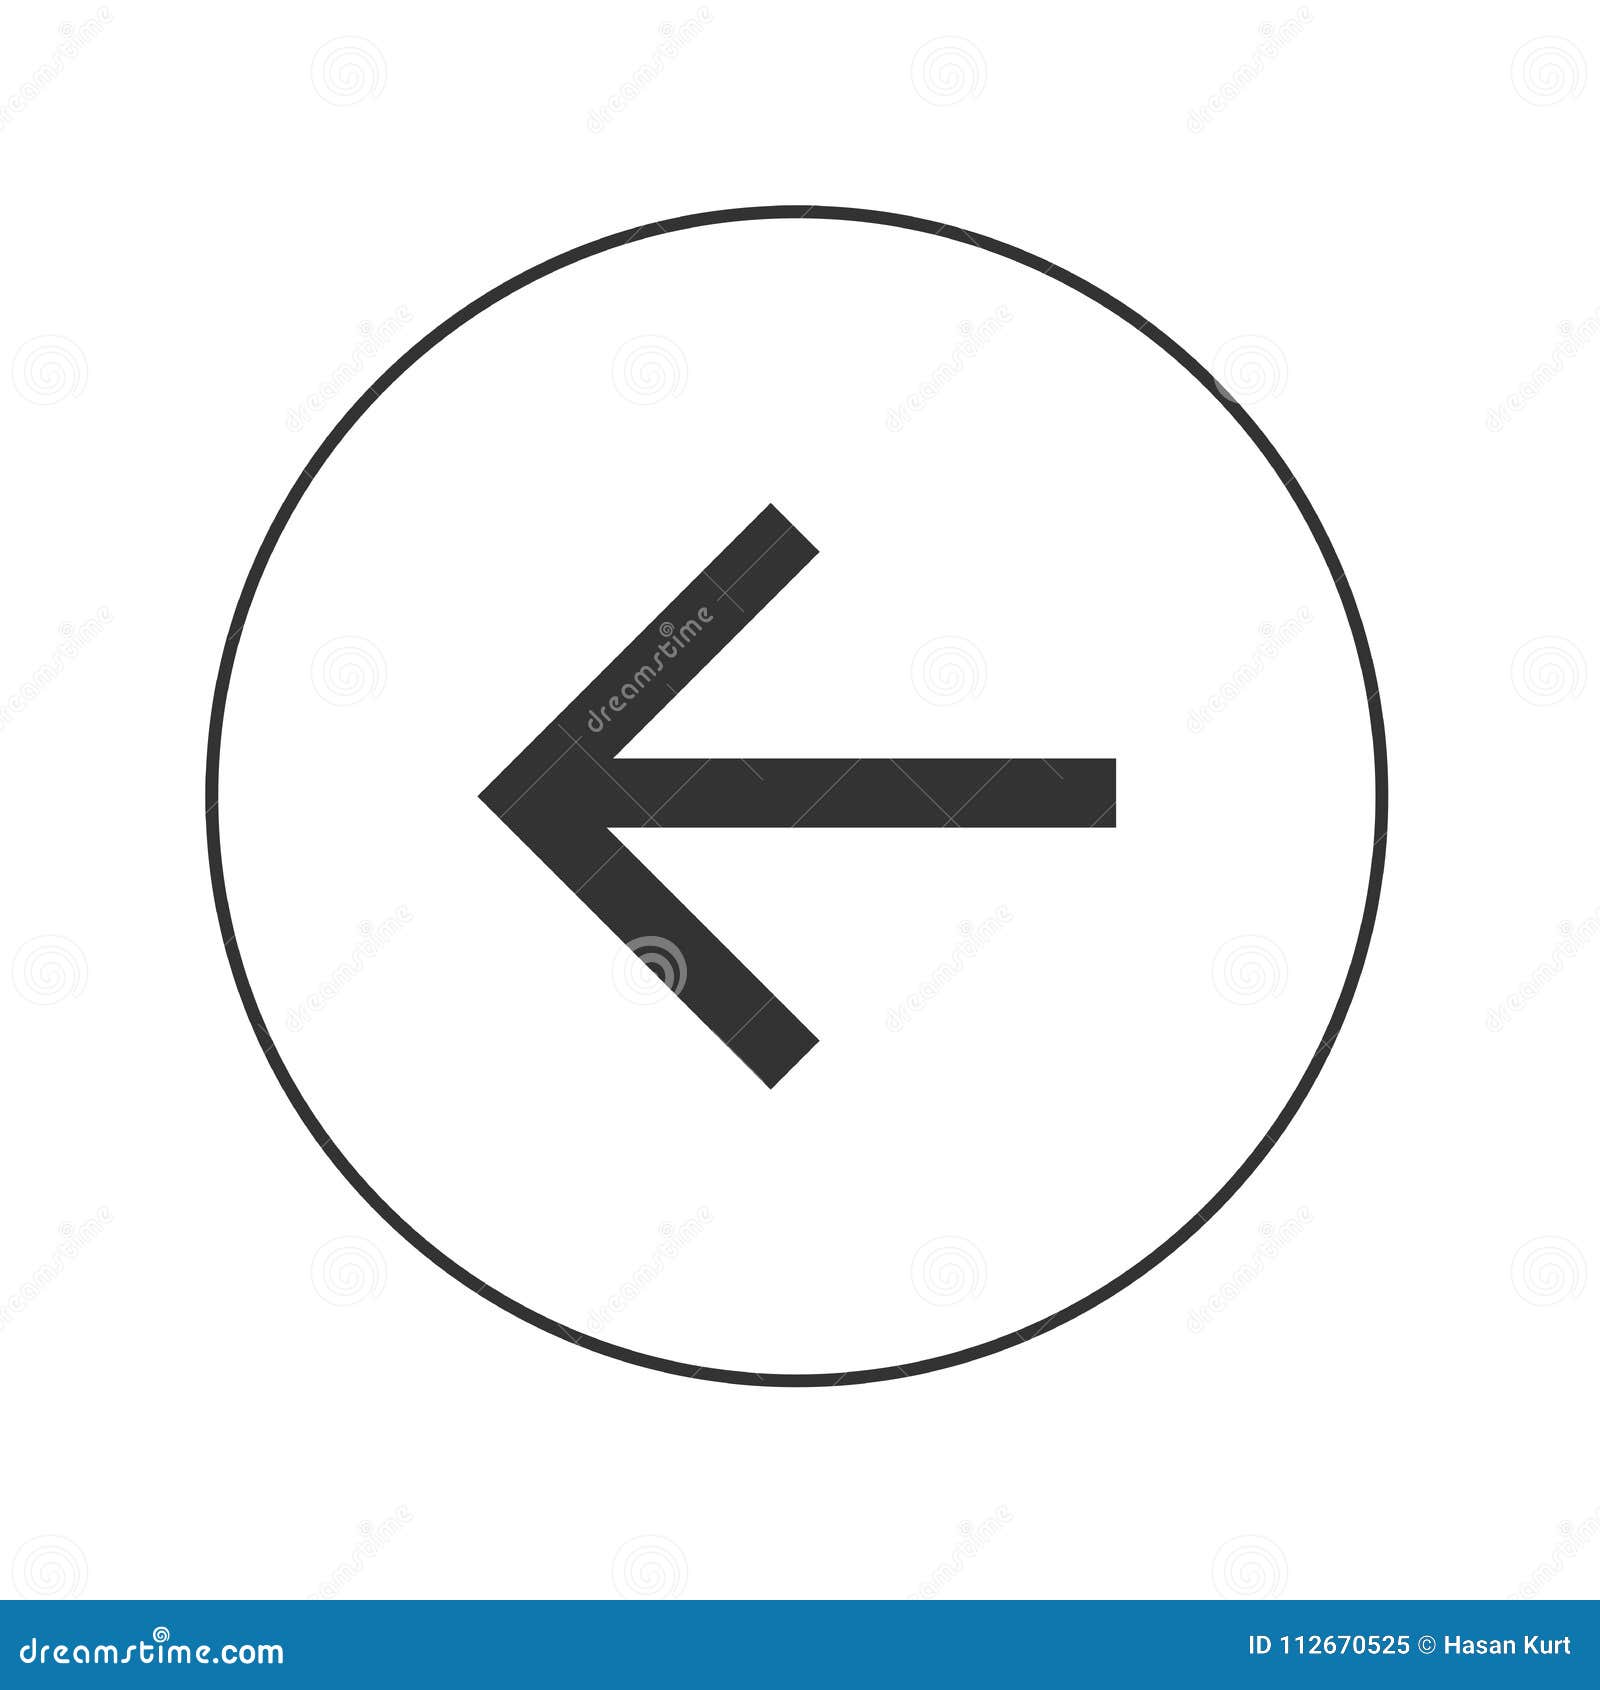 arrow web icon